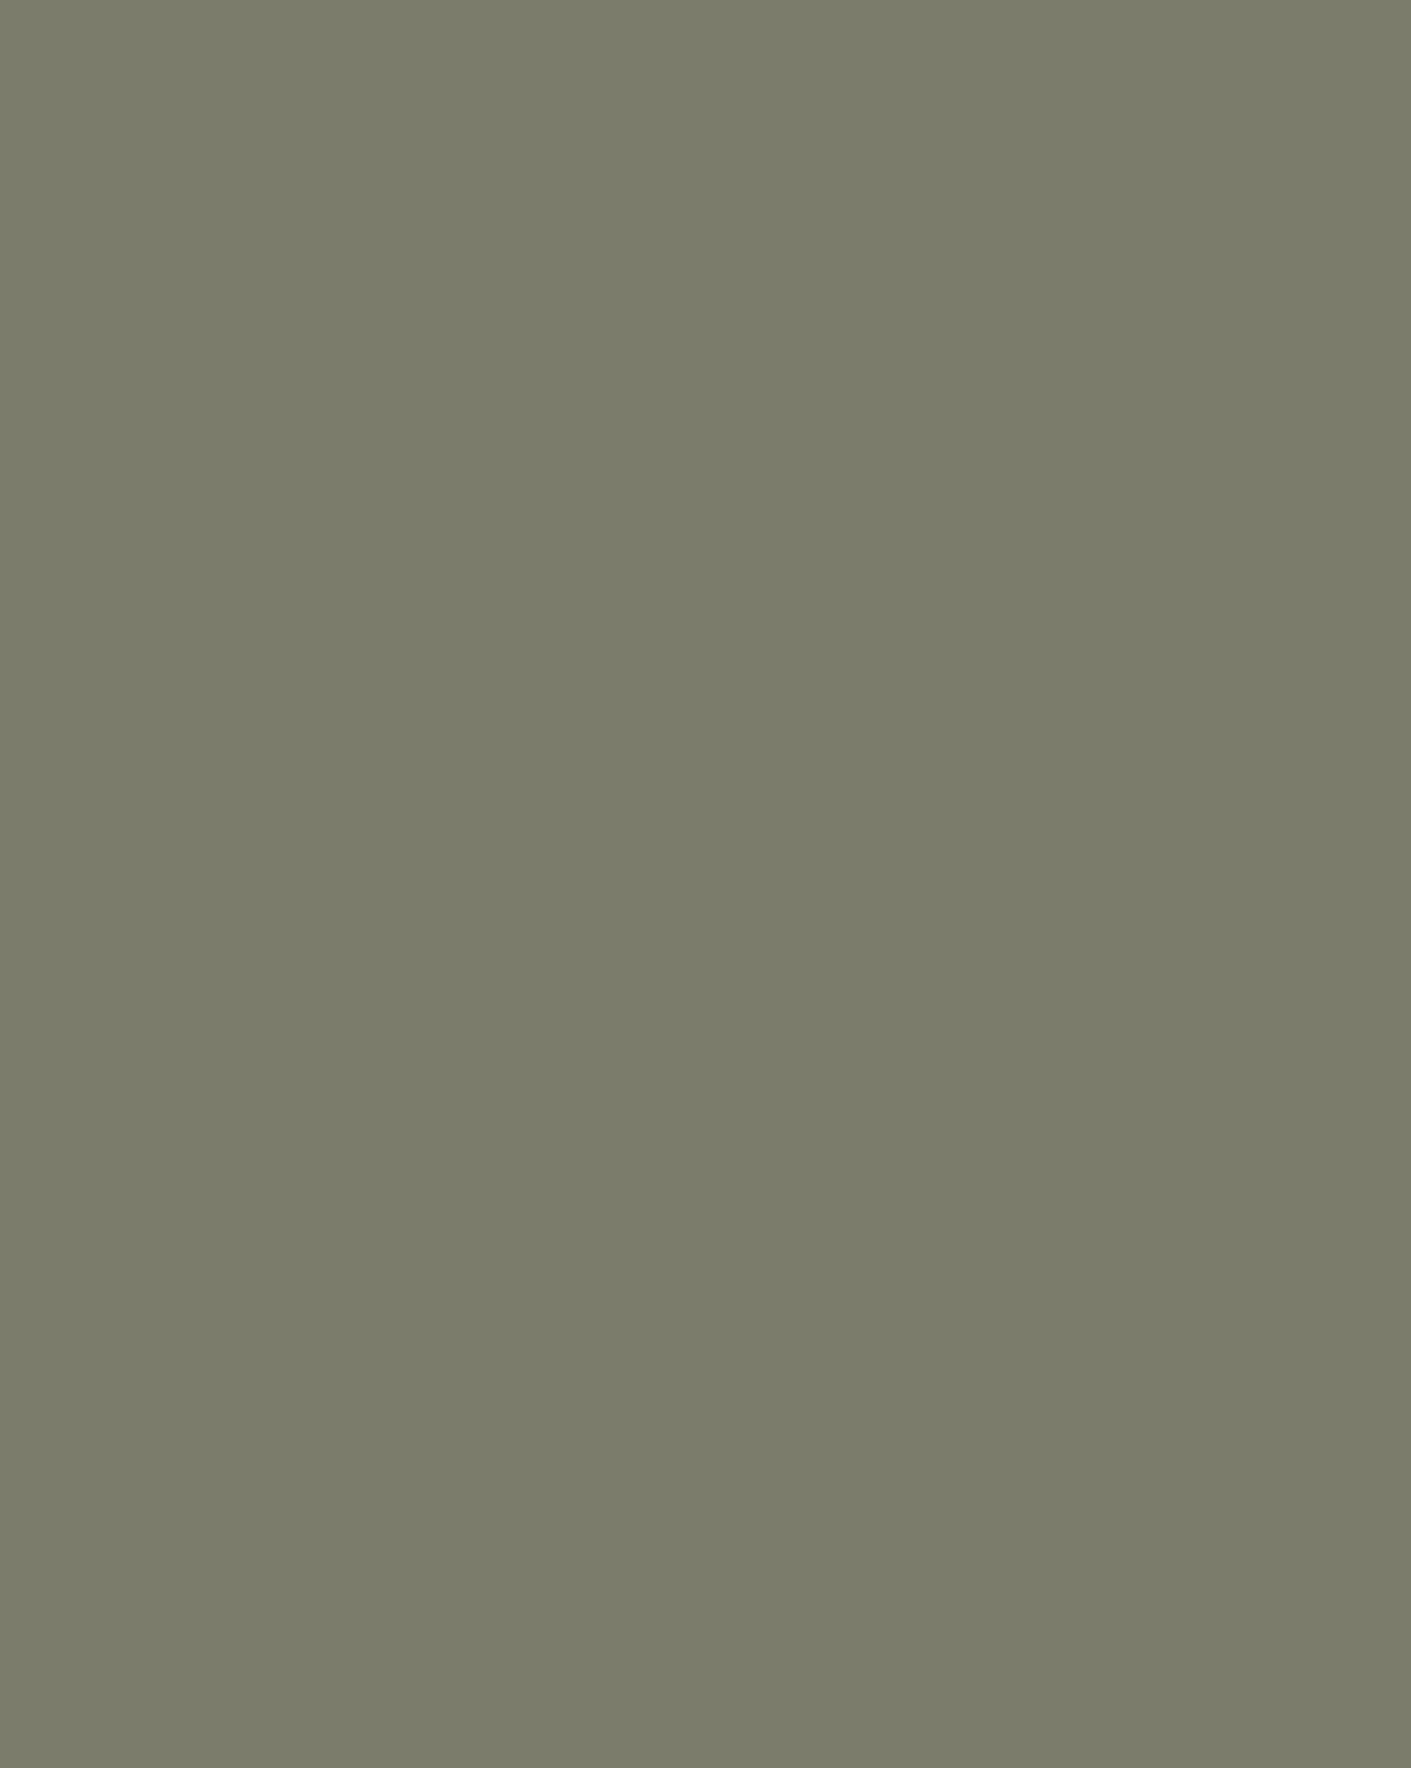 Александр Островский. 1879 год. Фотография: Иван Дьяговченко / Дом-музей Александра Островского, Москва